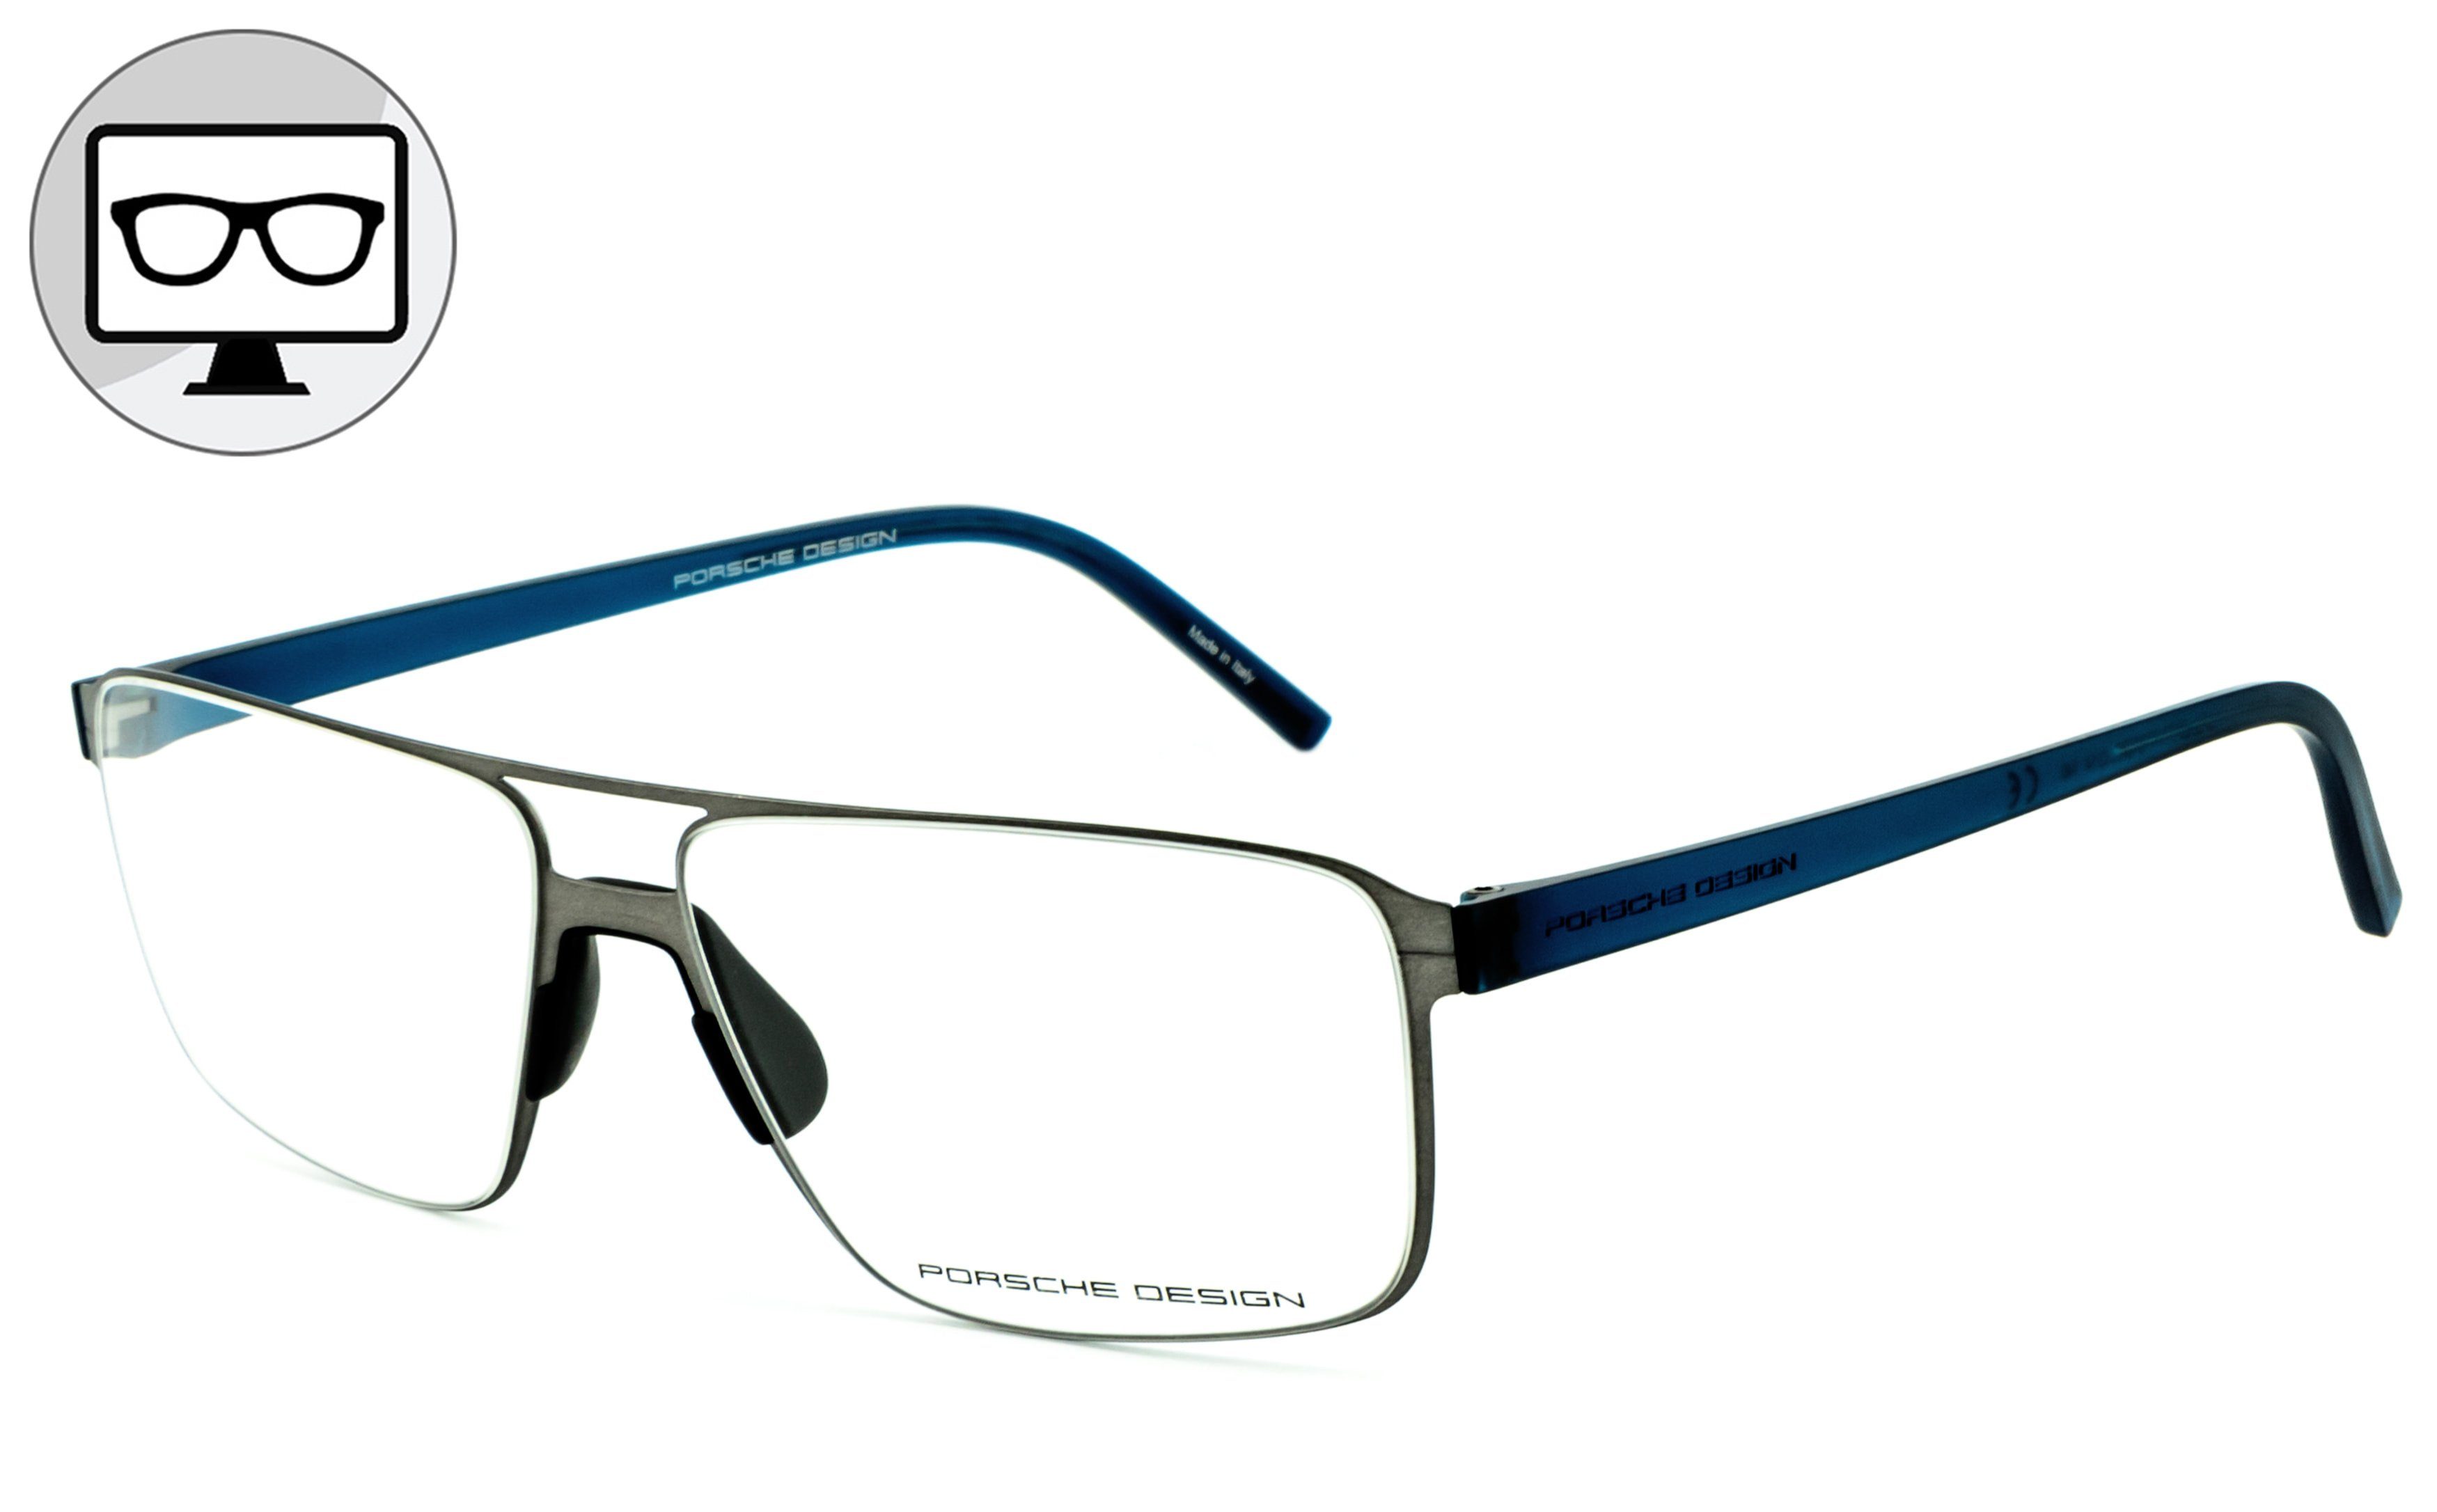 Sehstärke Bildschirmbrille, Blaulichtfilter Blaulicht Brille Bürobrille, ohne Gamingbrille, Brille, Design Brille, PORSCHE